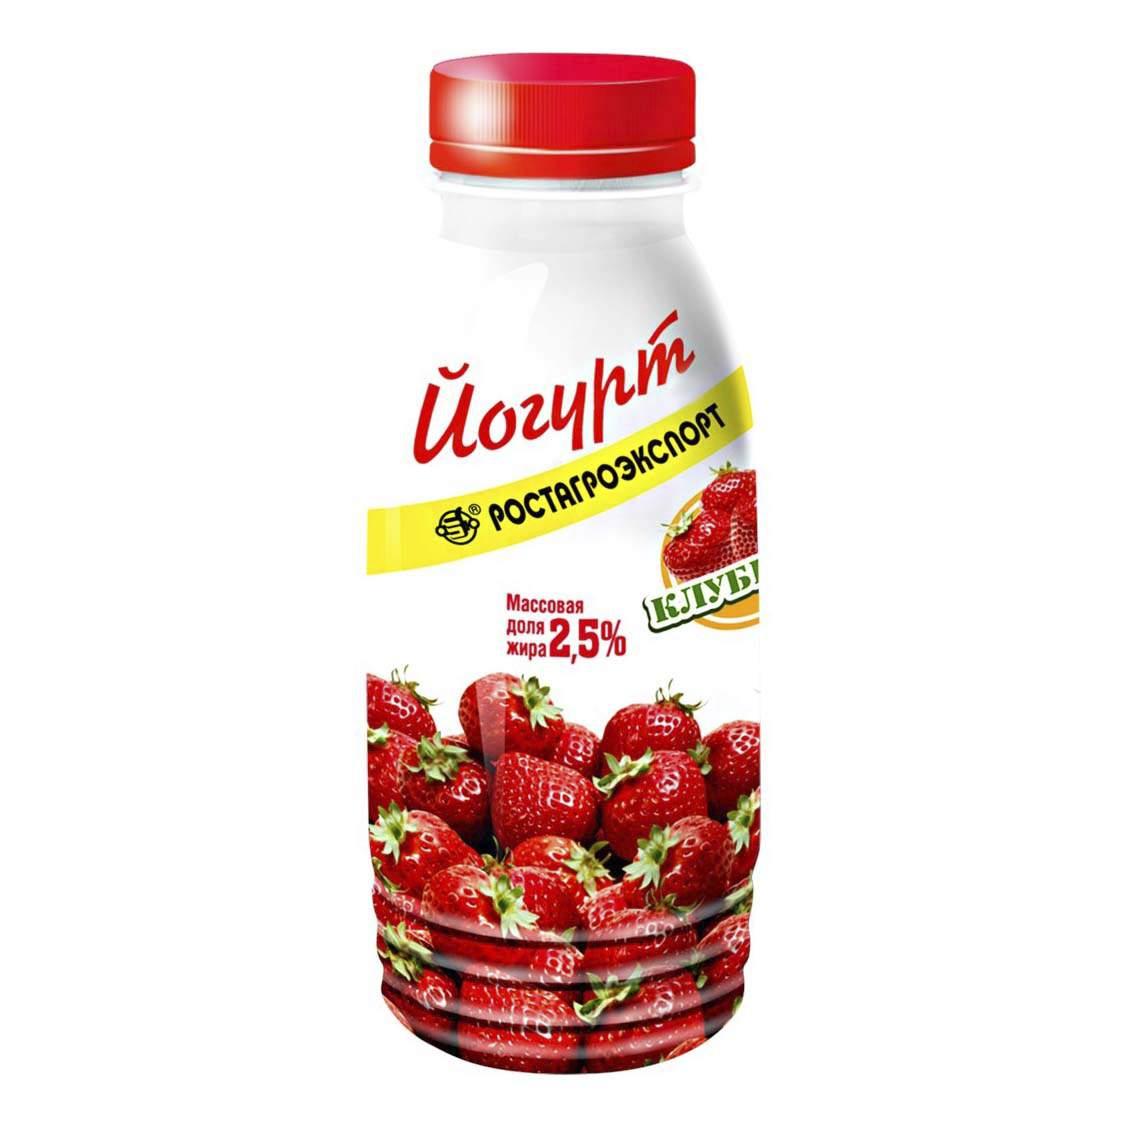 Йогурт 2.5% фрукт  РостАгро  бут 290г - интернет-магазин Близнецы